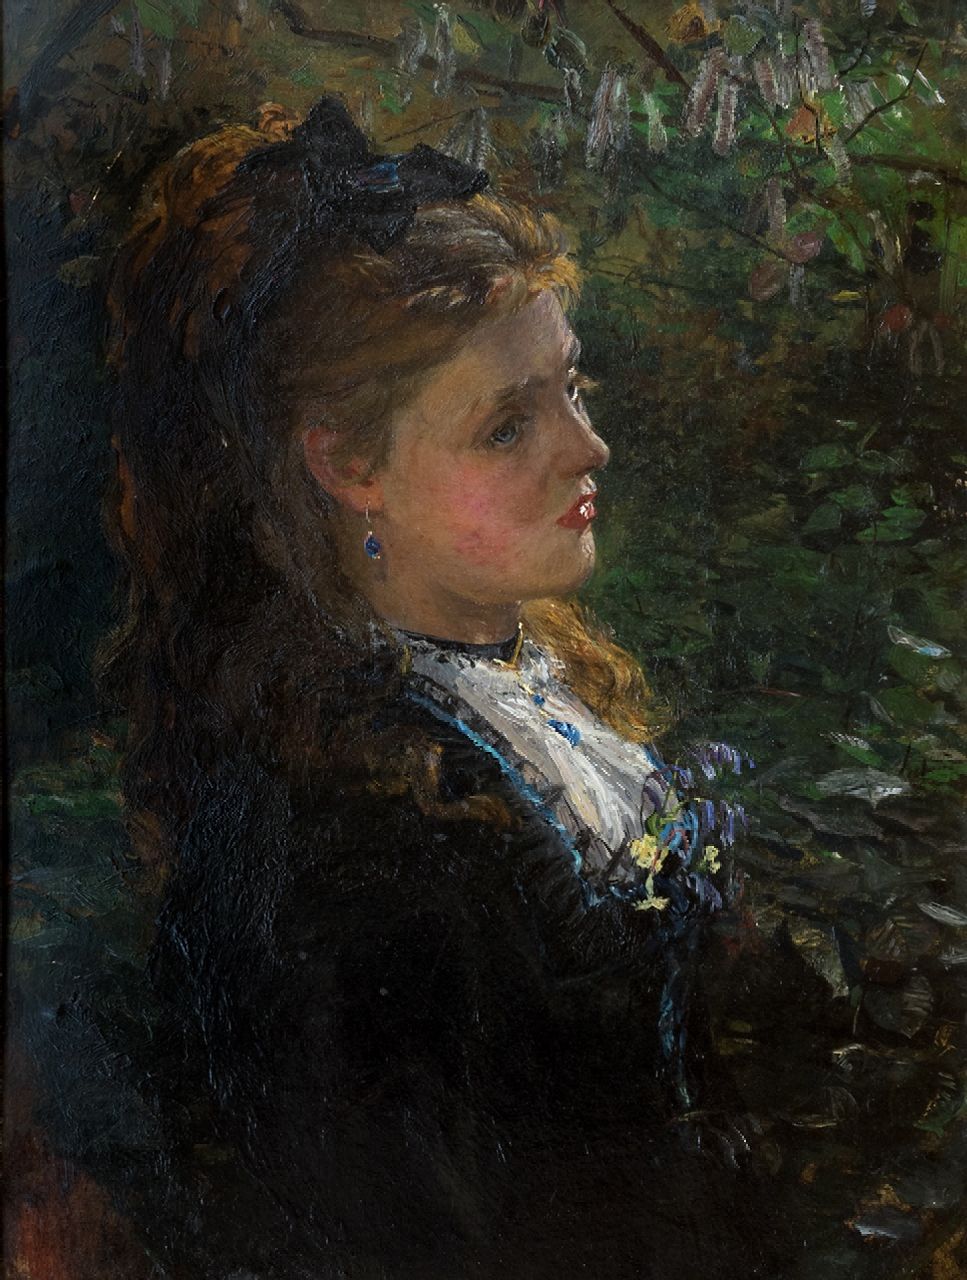 James Carroll Beckwith | Porträt einer junge Frau, ca. 1875 wahrscheinlich die jüngere Émilie-Louise Delevingne (Valtesse de la Bigne)., Öl auf Holzfaser, 40,0 x 30,0 cm, ca. 1875-1878